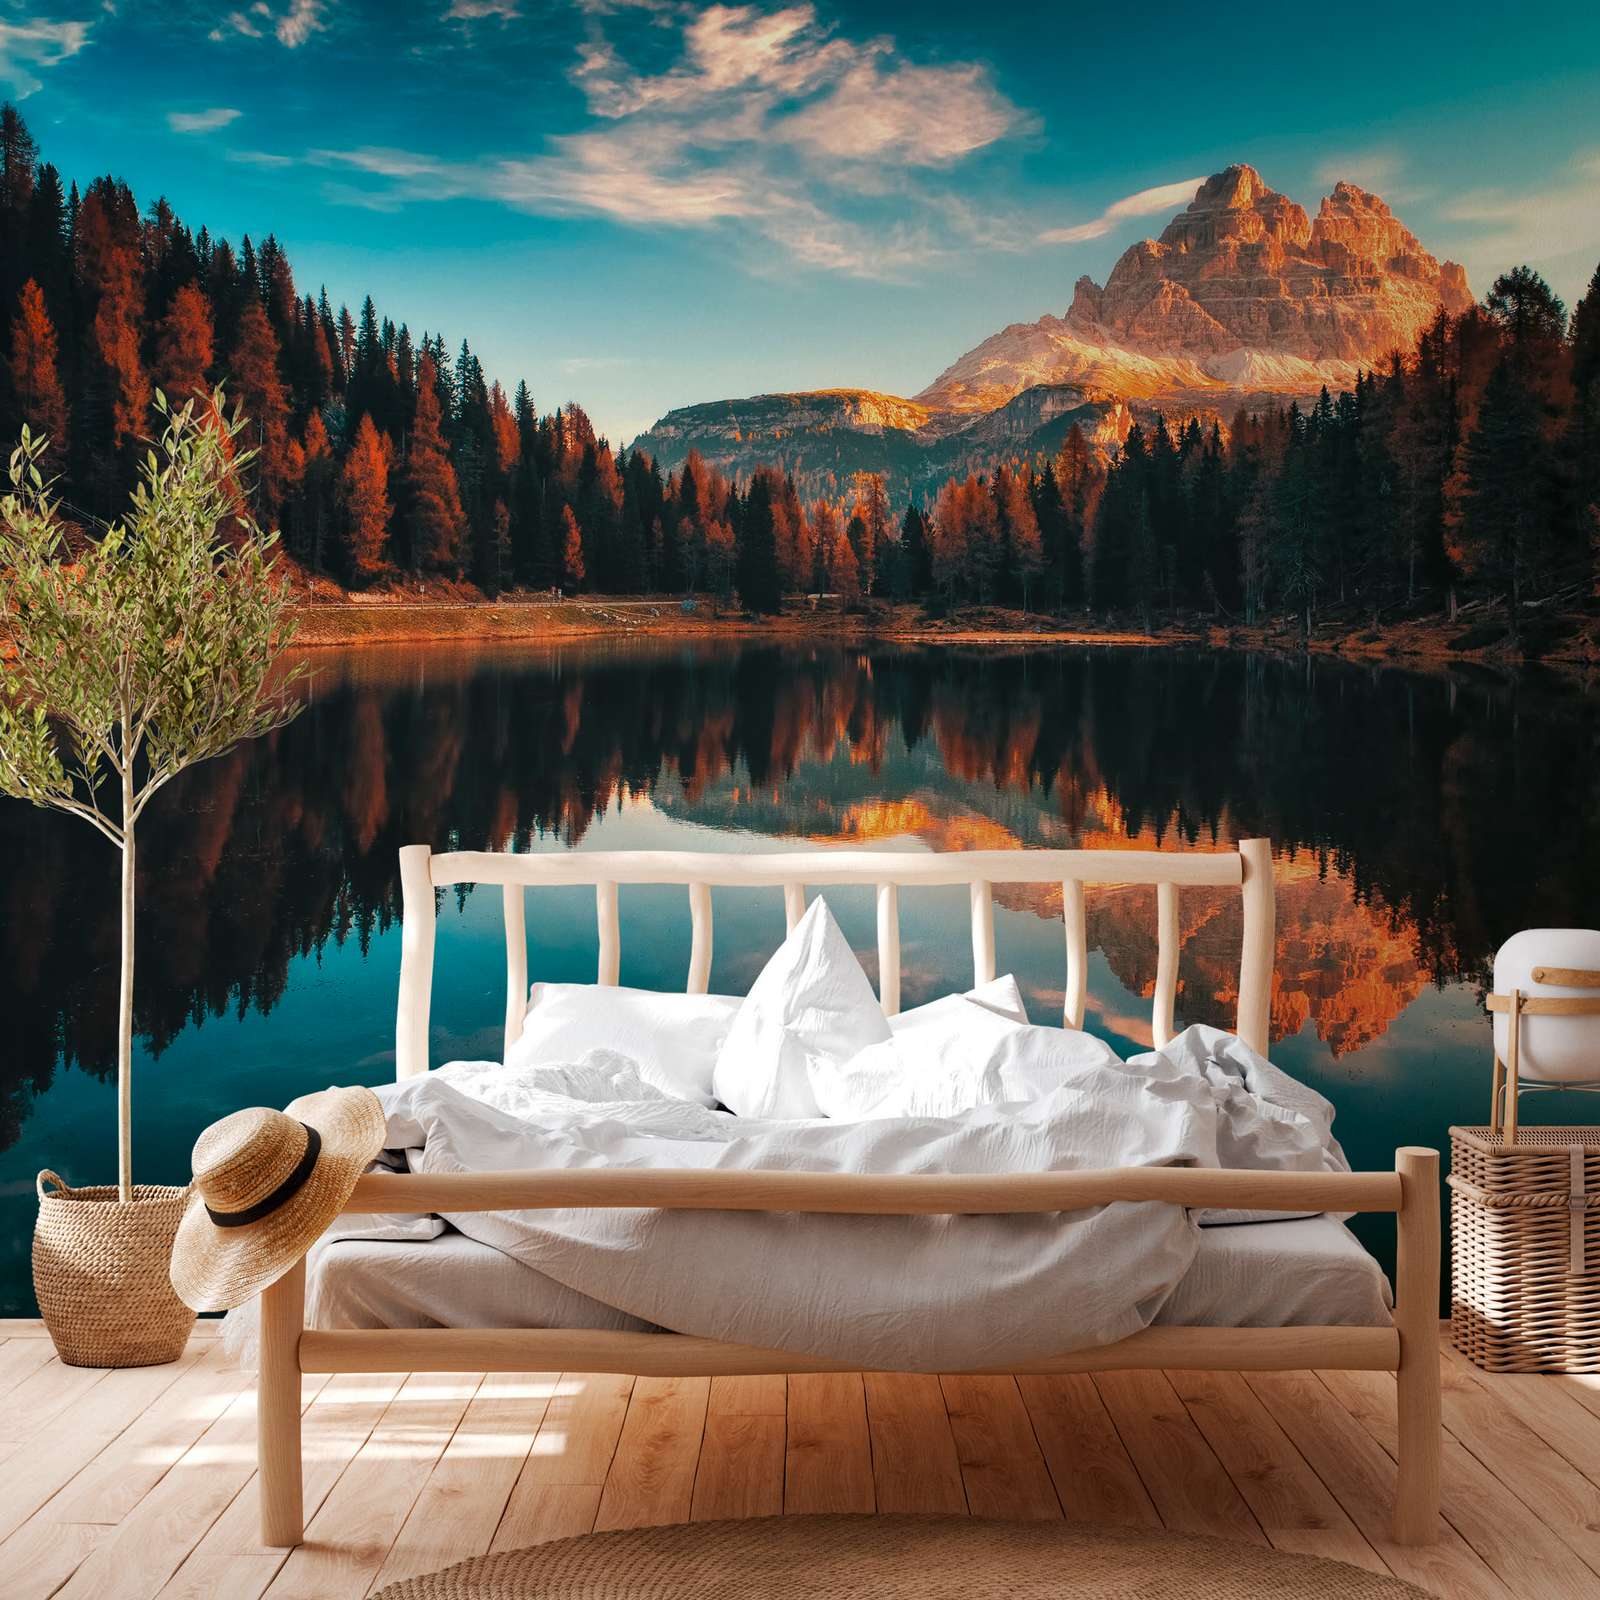             Papier peint panoramique avec paysage de montagne et lac - vert, bleu, multicolore
        